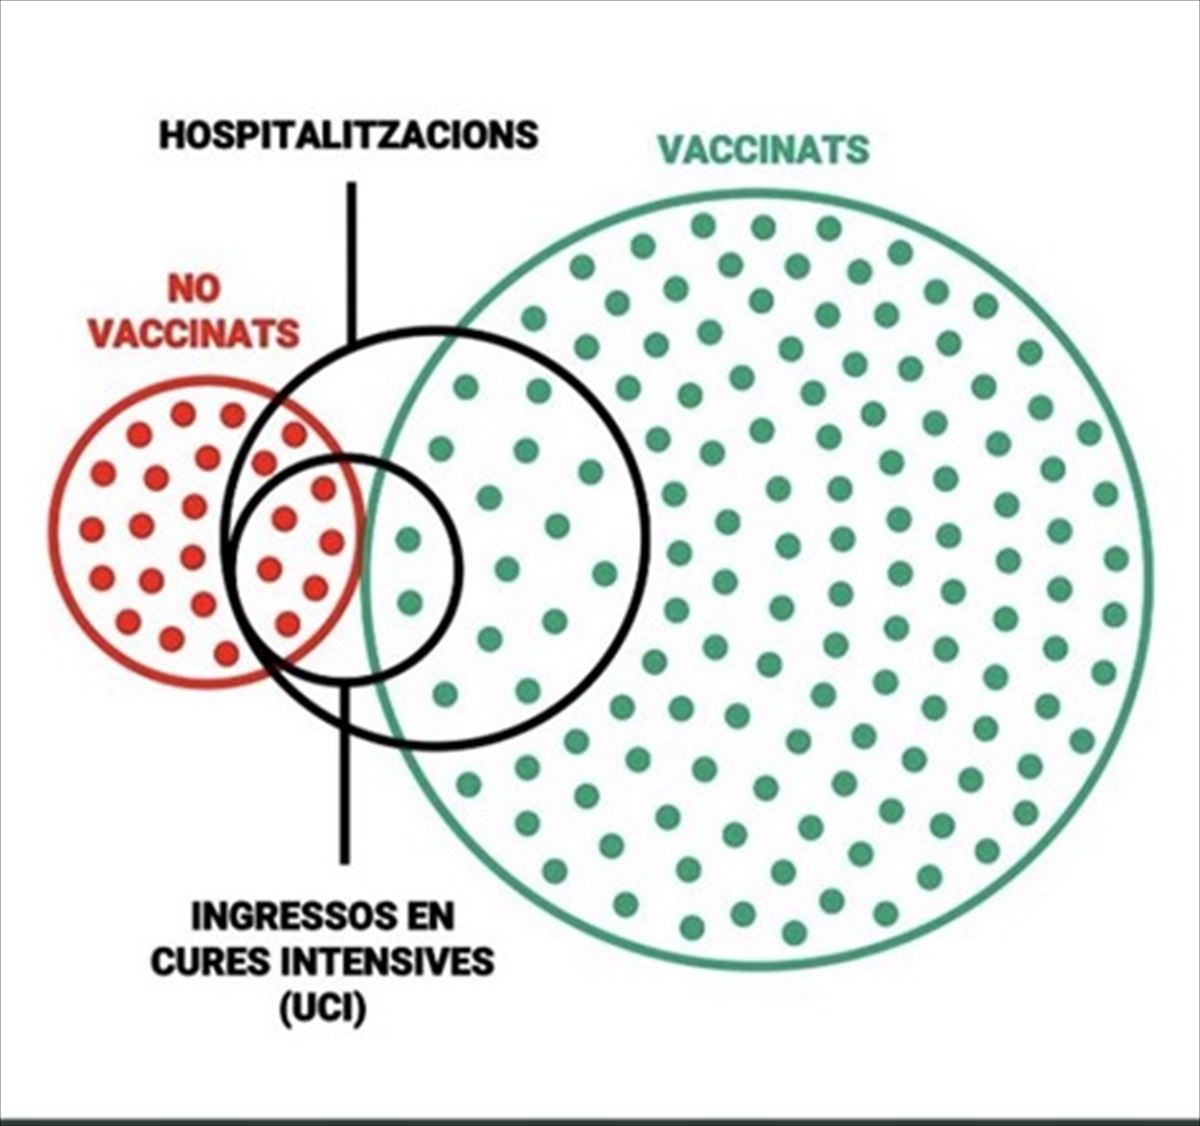 Gráfico sobre la relación vacunados-hospitalizados